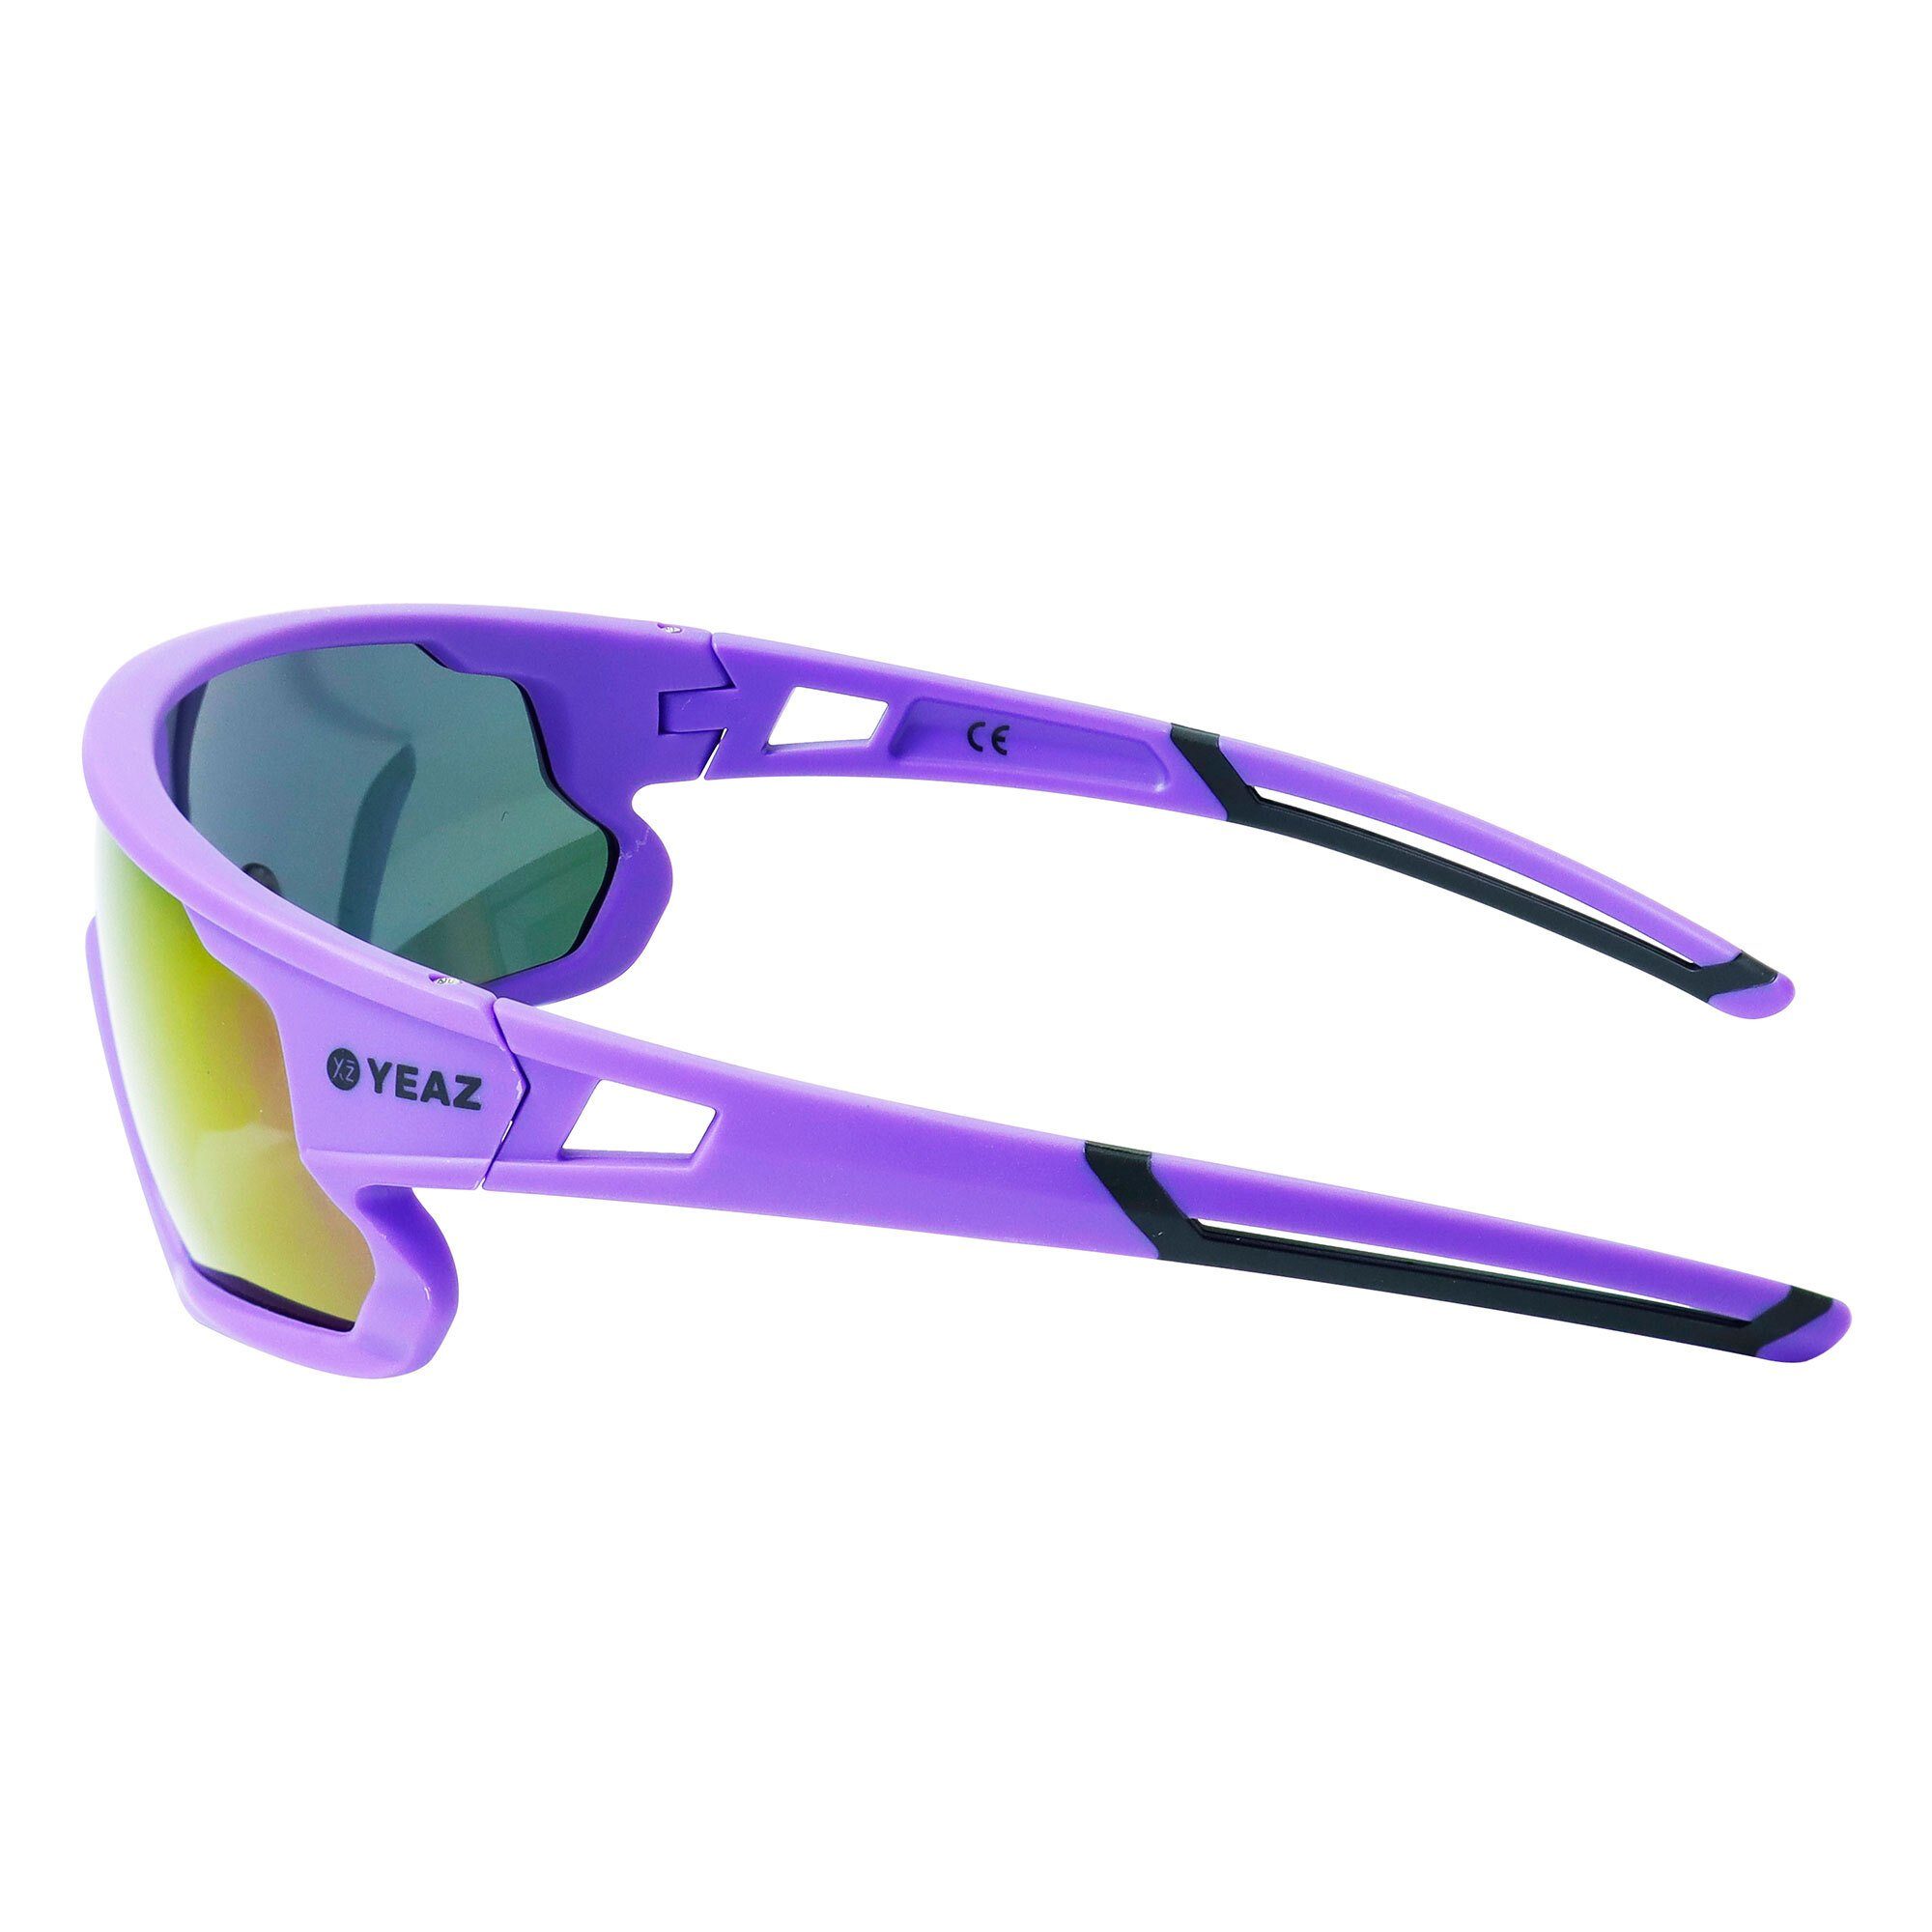 blue-magenta/purple, Guter sport-sonnenbrille Sportbrille optimierter bei Schutz Sicht SUNRISE YEAZ